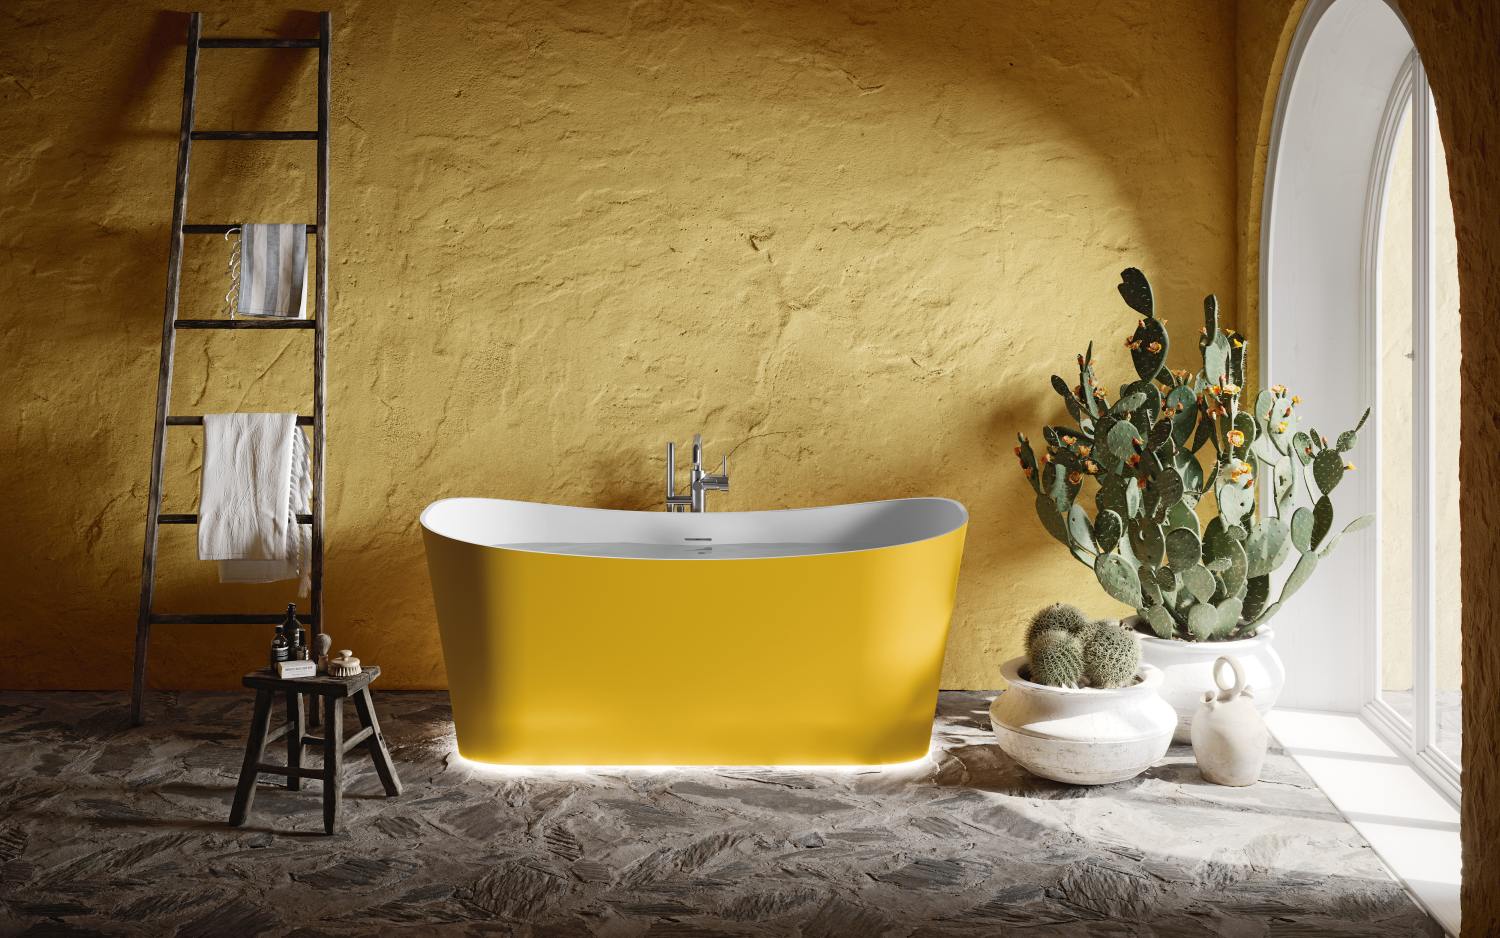 żółty w łazience, wystrój żółtej łazienki, żółta łazienka przytulna